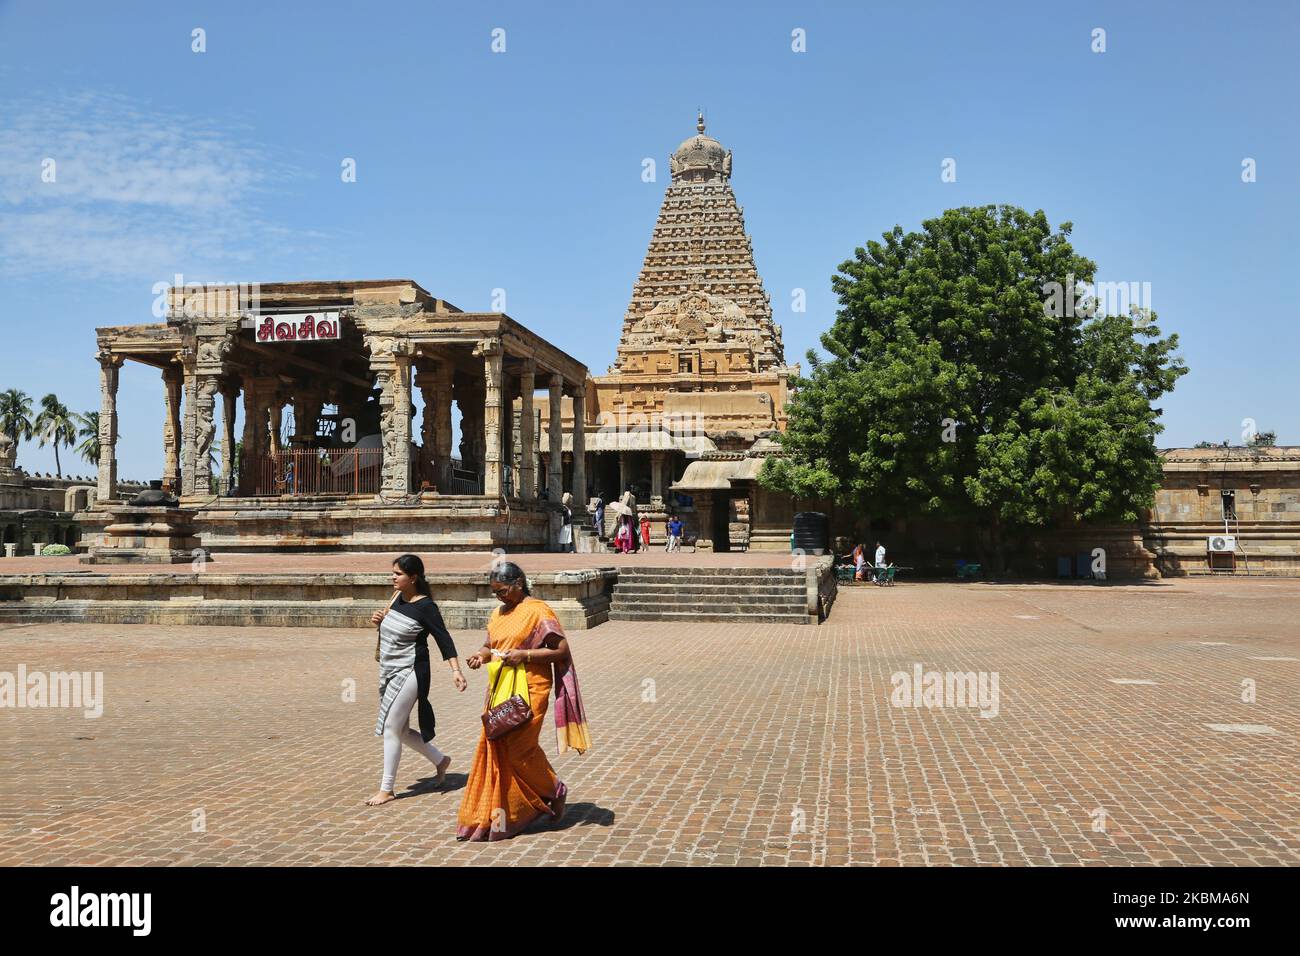 Il Tempio di Brihadeeswarar (conosciuto anche come Tempio di Brihadisvara, Tempio di Brihadisvara, Tempio grande, Tempio di RajaRajeswara, Rajarajeswaram e Tempio di Peruvudayar) è un tempio indù dedicato al Signore Shiva situato in Thanjavur, Tamil Nadu, India. Il tempio è uno dei più grandi templi in India ed è un esempio di architettura Dravidiana costruita durante il periodo Chola da Raja Raja Chola i e completata nel 1010 CE. Il tempio ha più di 1000 anni ed è parte del patrimonio dell'umanità dell'UNESCO, conosciuto come il "Grande Tempio vivente di Chola", che comprende il Tempio di Brihadeeswarar, Gangaikonda Cholapuram e ai Foto Stock